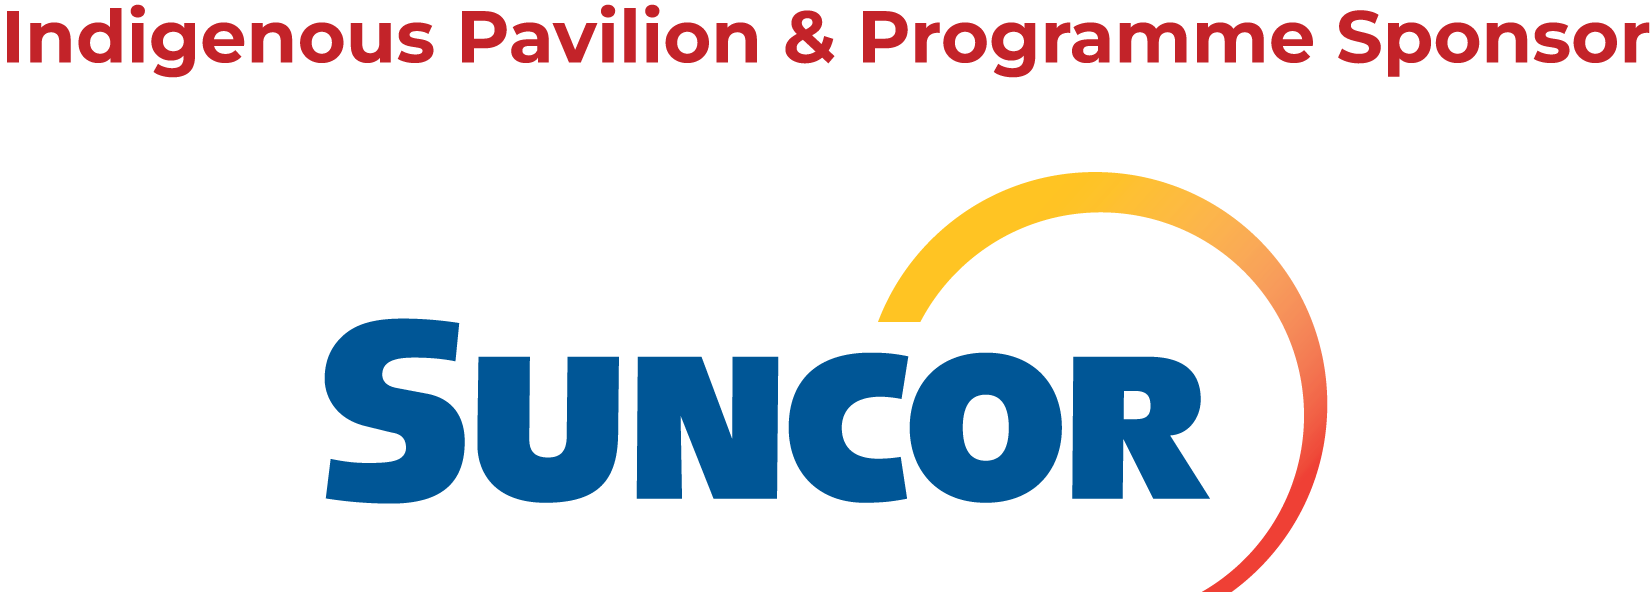 Indigenous Pavilion Sponsor Suncor